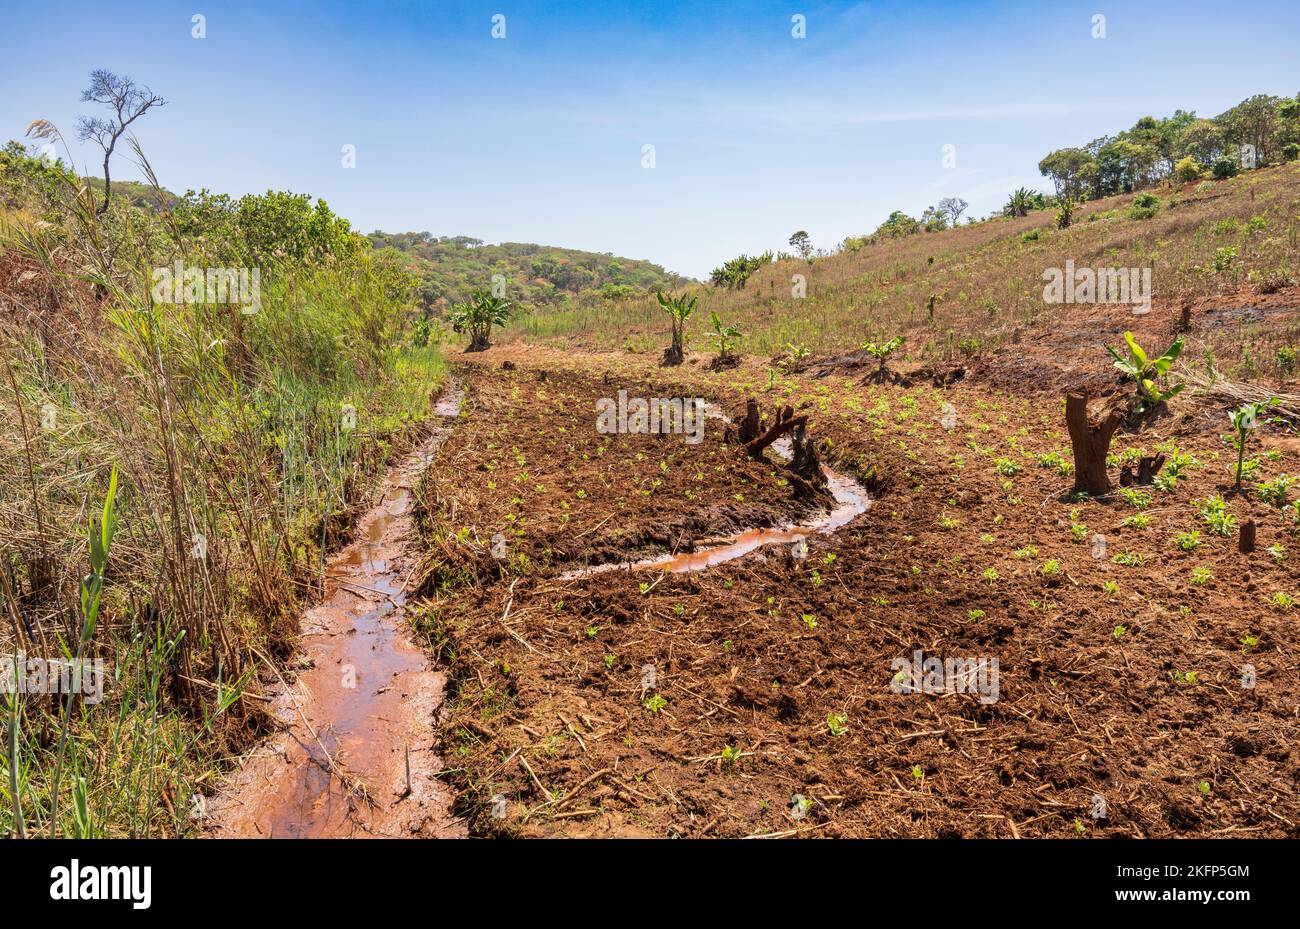 Agricoltura sostenibile in un dambo (zona umida) in fondo ad un bacino idrografico nel distretto di Nkhata Bay, Malawi Foto Stock